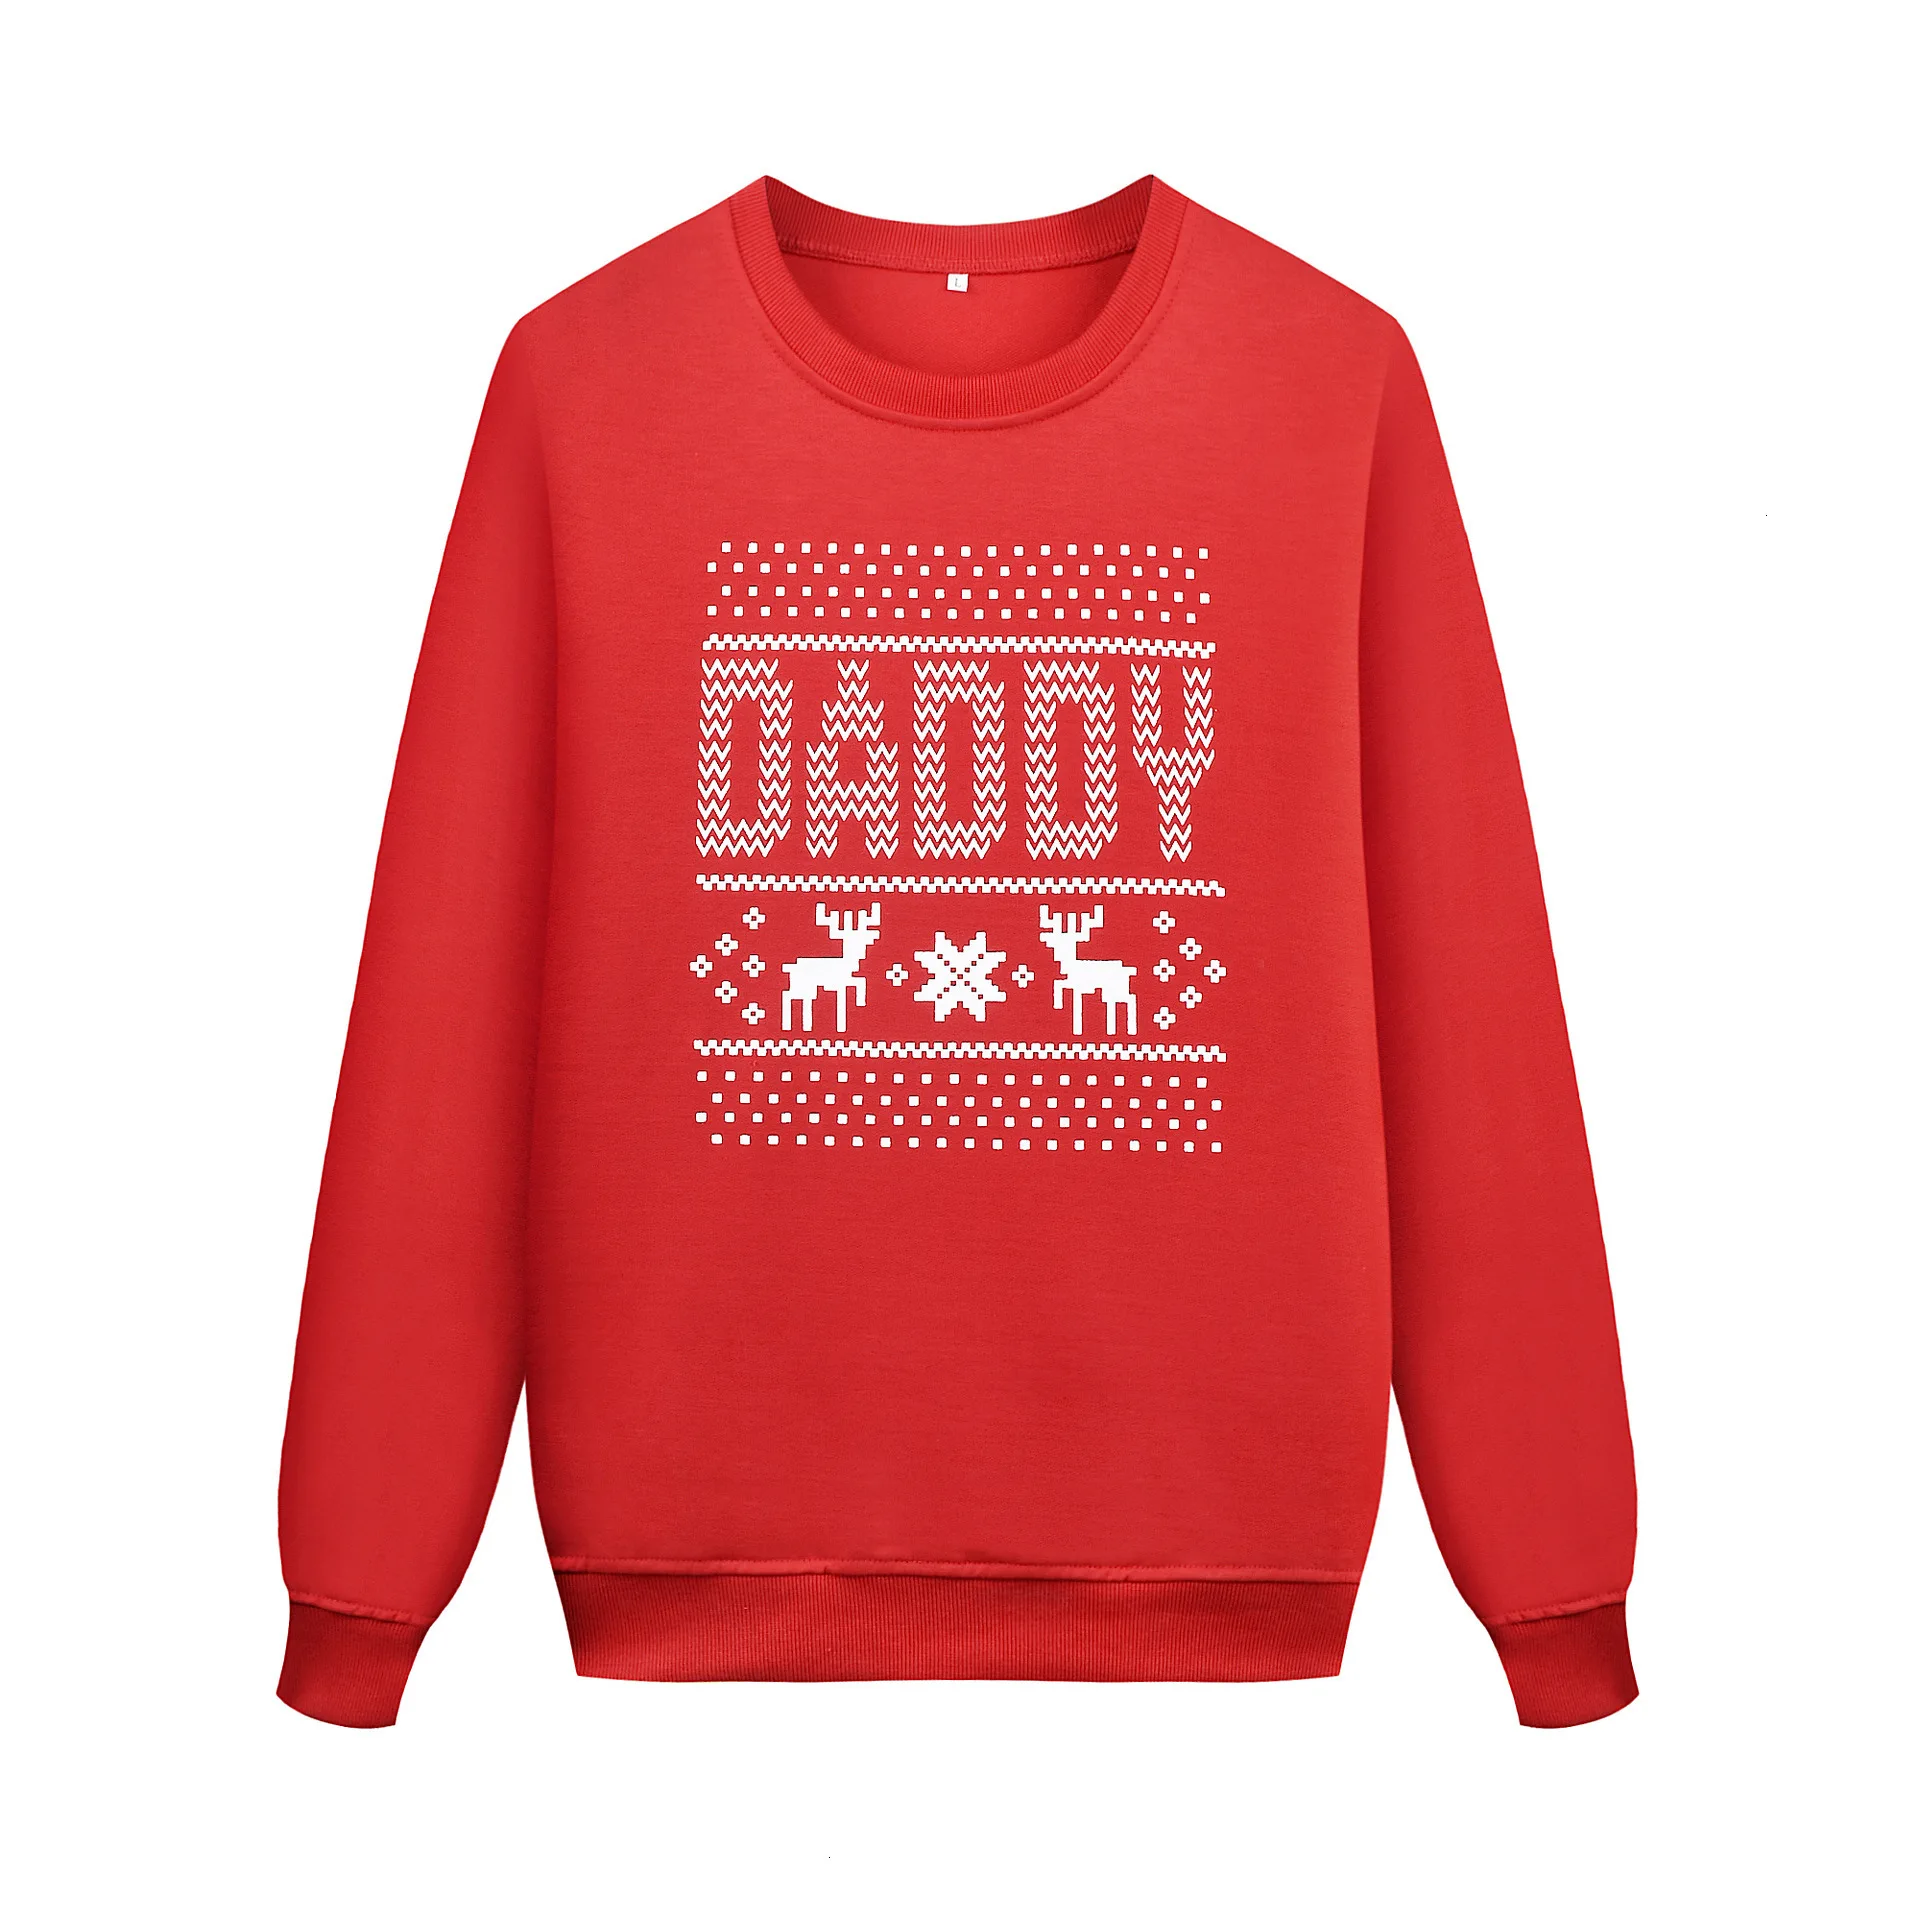 Коллекция года, зимние Рождественские свитера для всей семьи свитера с принтом оленя для мамы, папы, дочери и сына семейная одежда красного цвета для мамы и меня